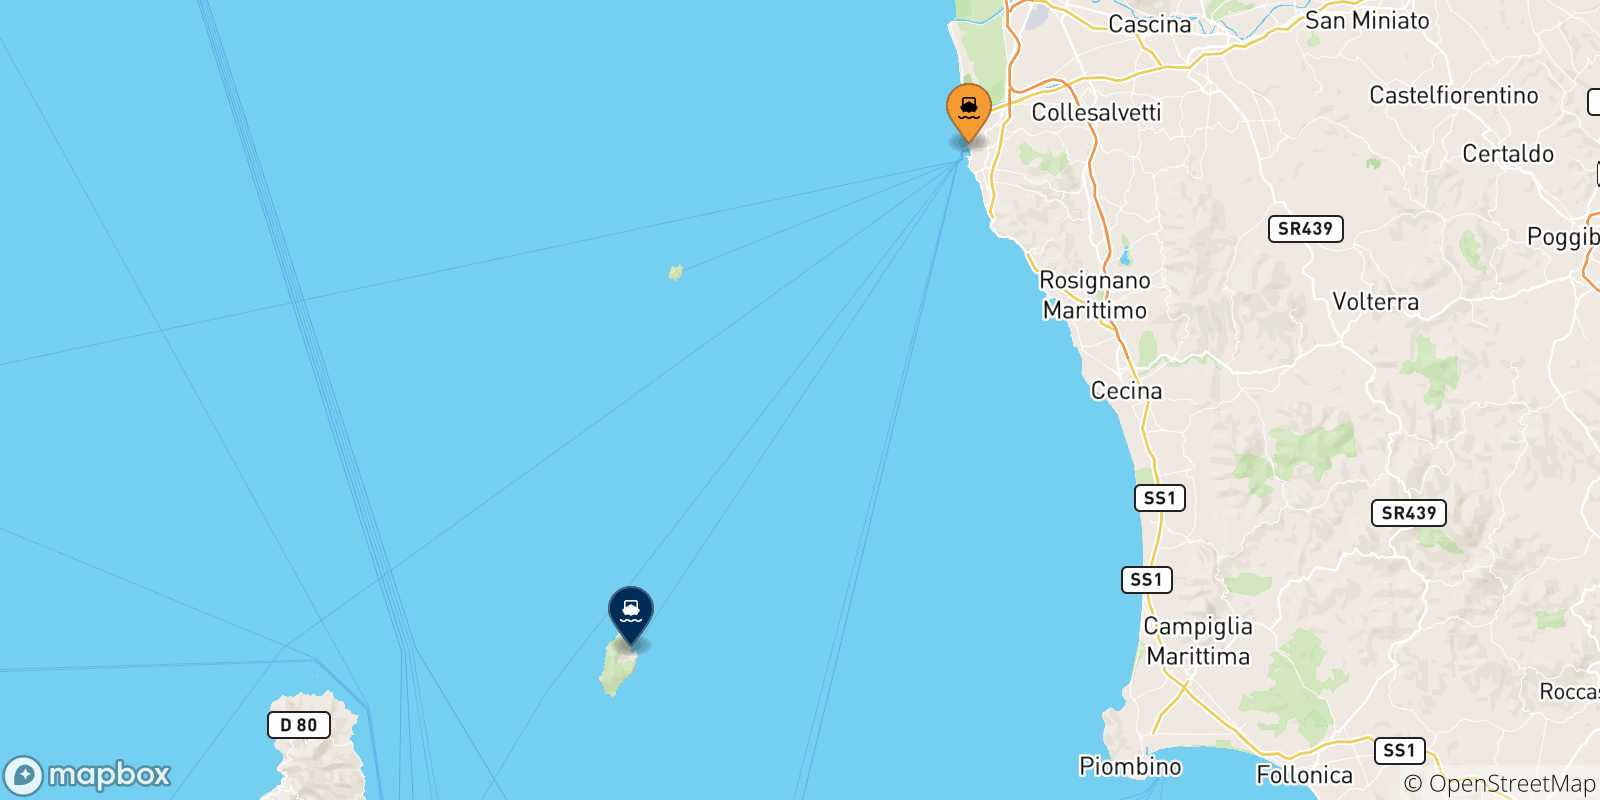 Mappa dei porti collegati con l' Isola Di Capraia